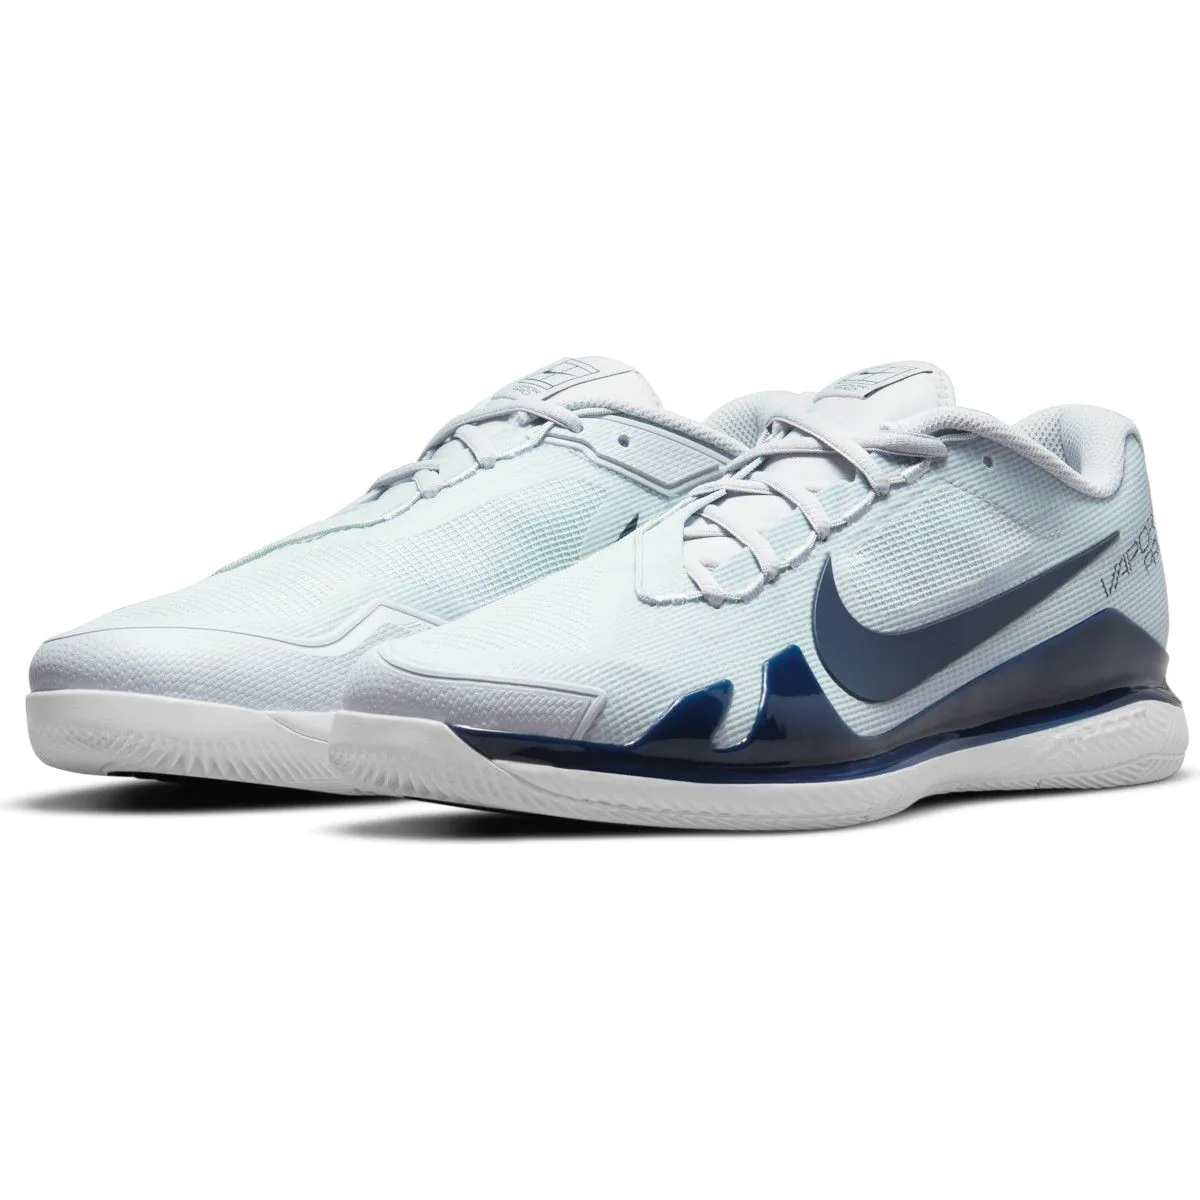 NikeCourt Air Zoom Vapor Pro Men's Hard Court Tennis Shoes C